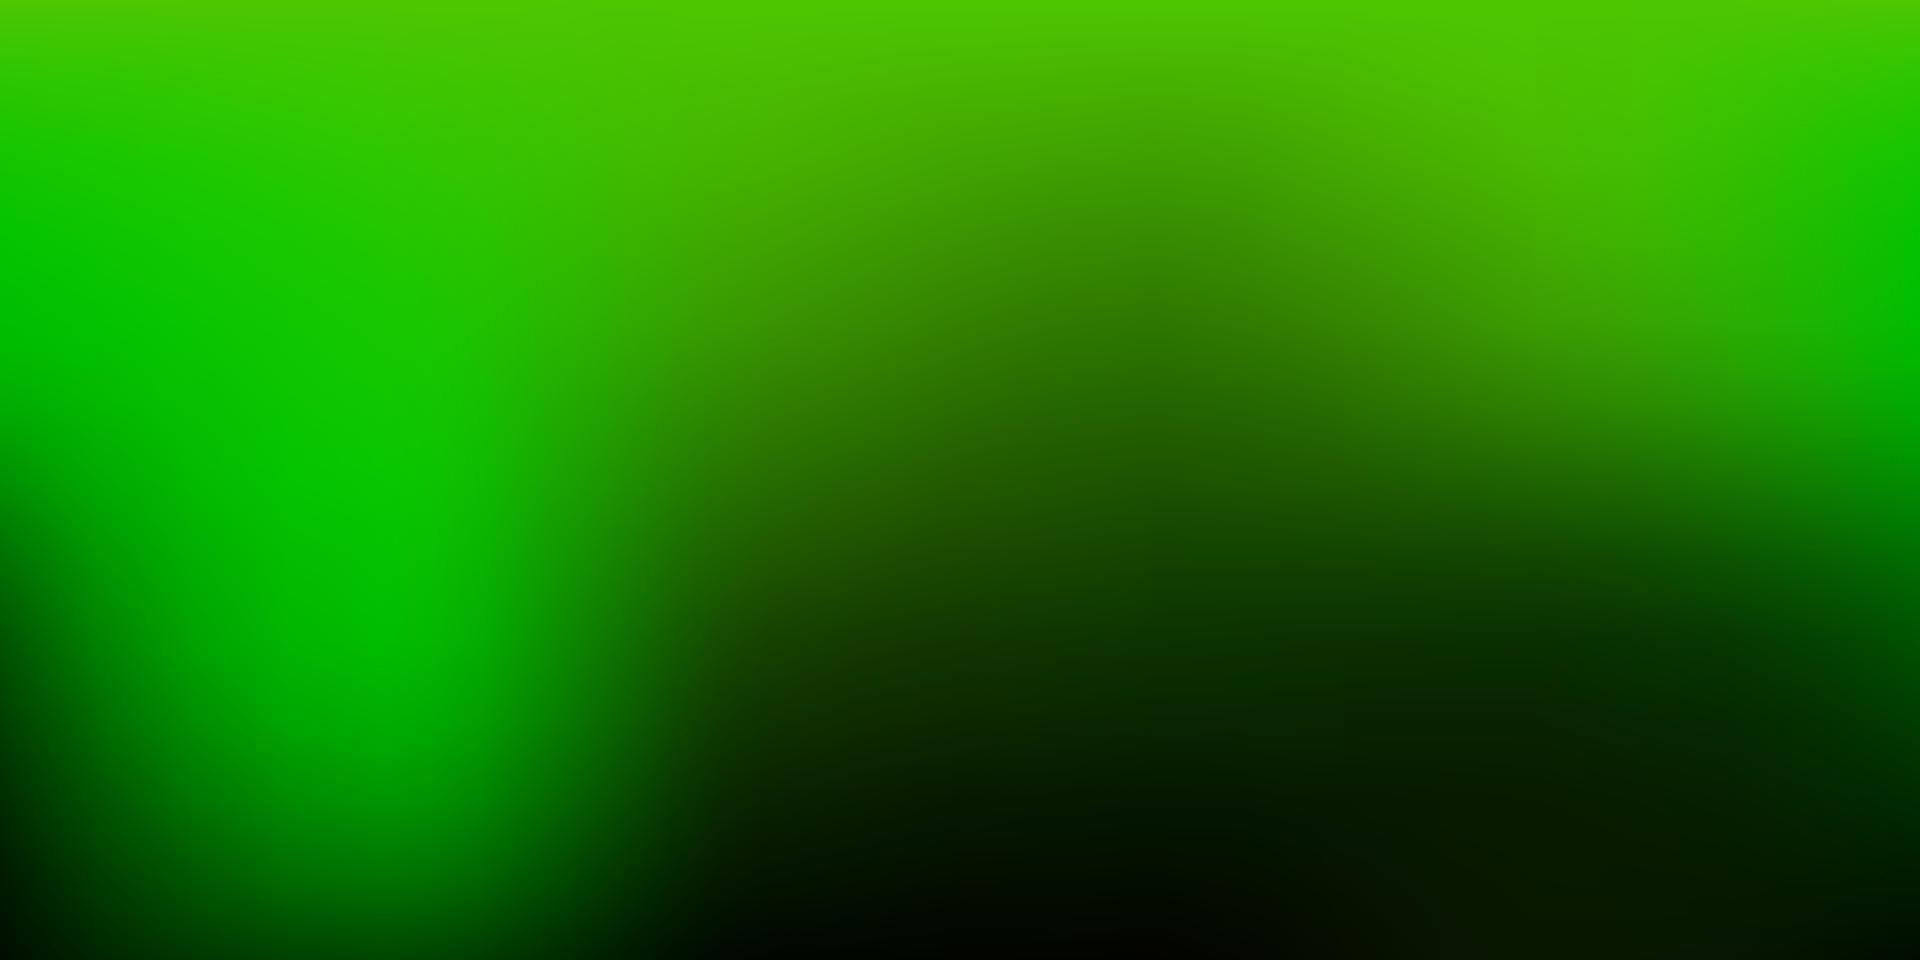 Dark Green vector blurred layout.